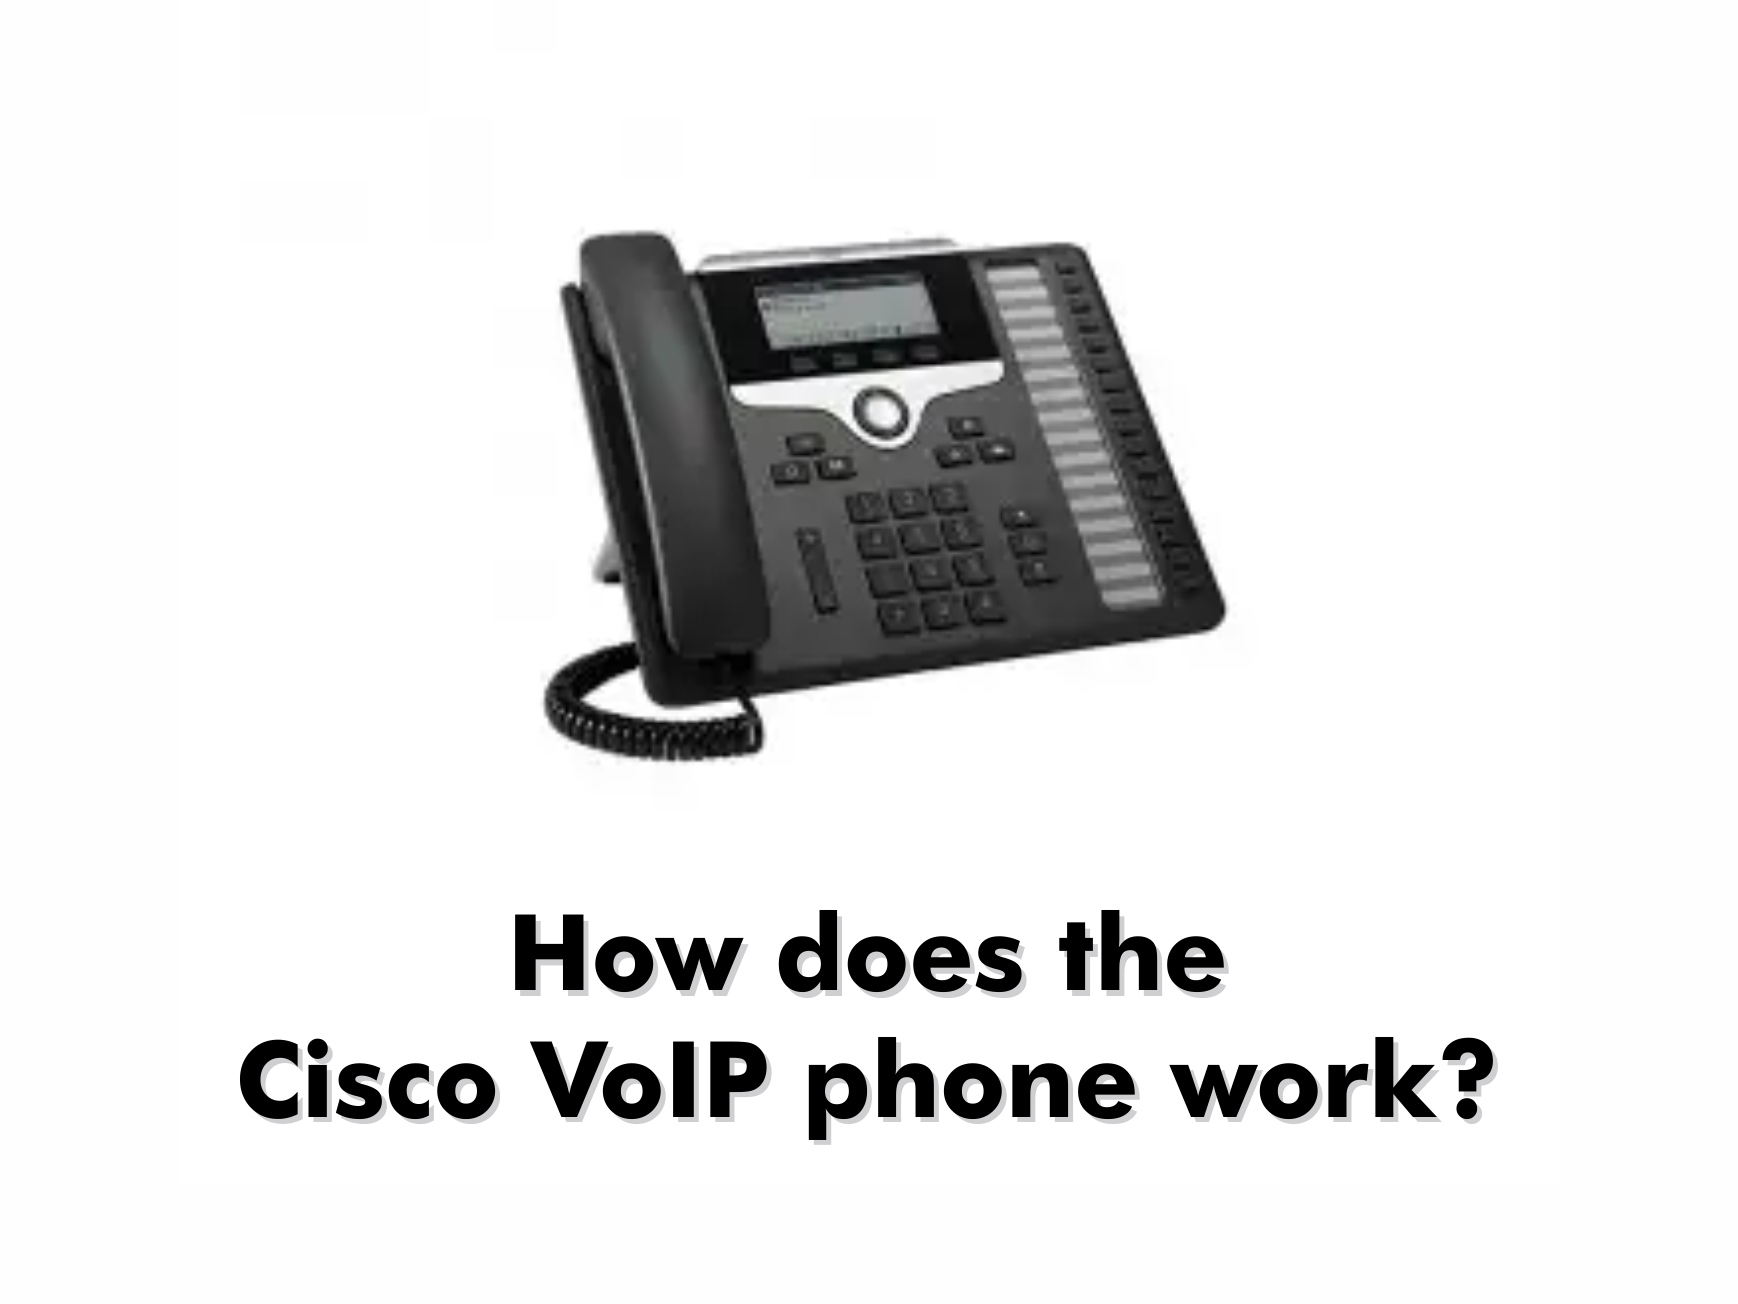 Cisco VoIP phones